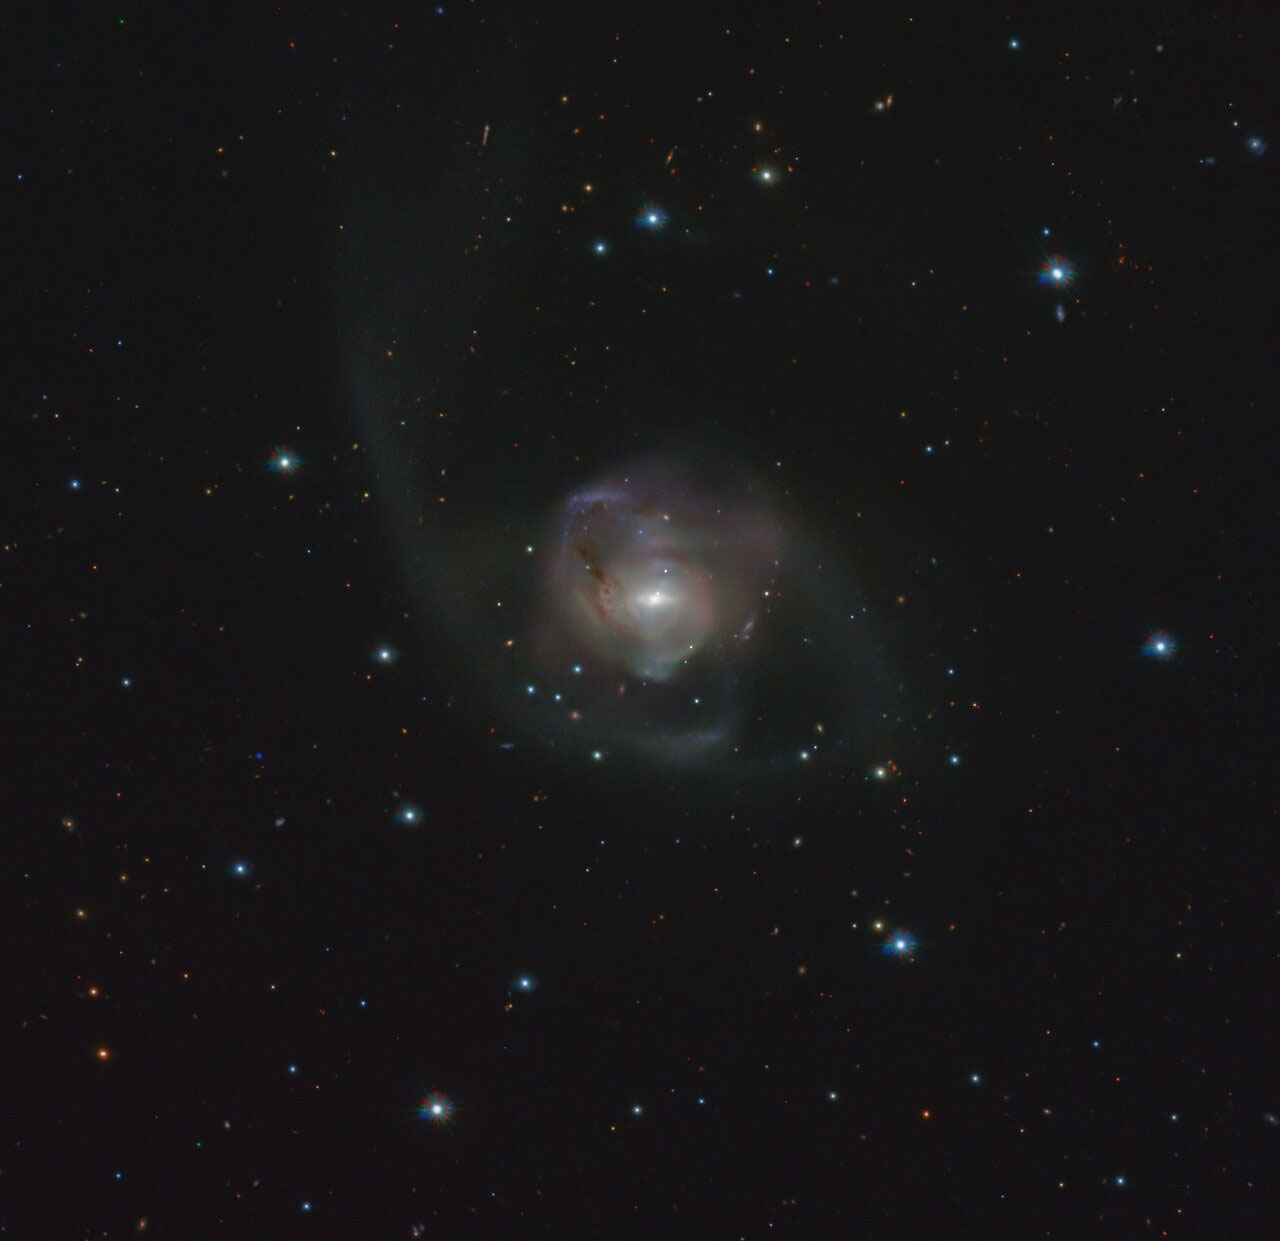 宝瓶座NGC 7727星系中发现迄今为止离地球最近的一对超大质量黑洞